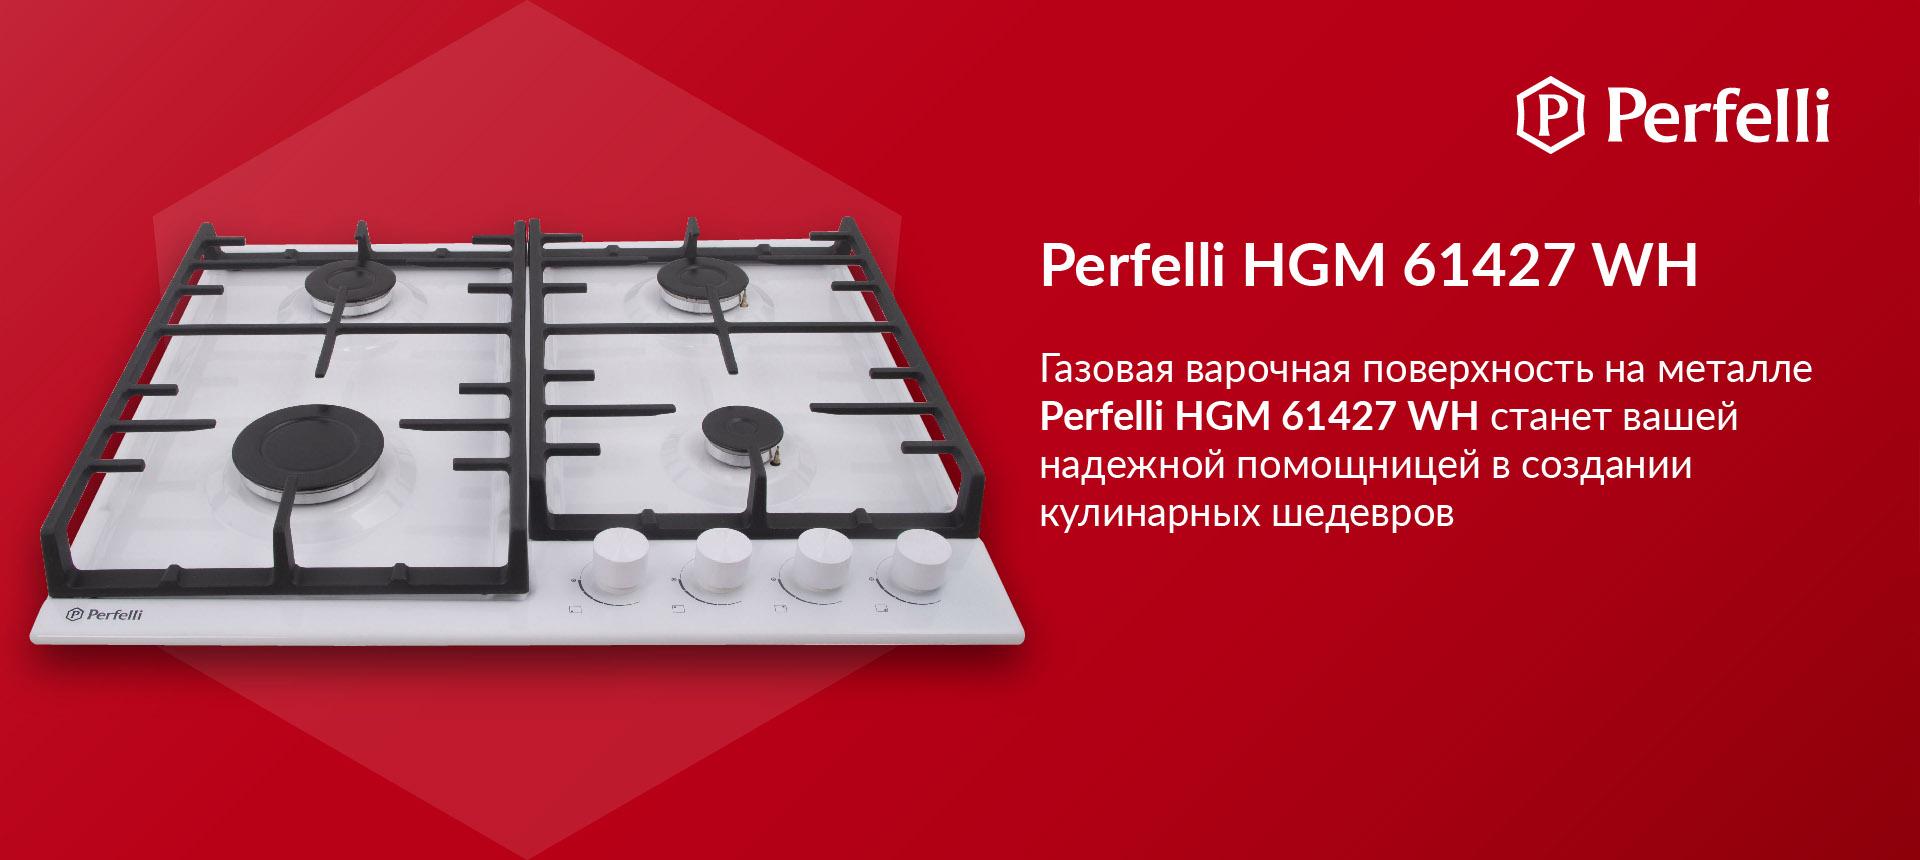 Газовая варочная поверхность на металле Perfelli HGM 61427 WH станет вашей надежной помощницей в создании кулинарных шедевров